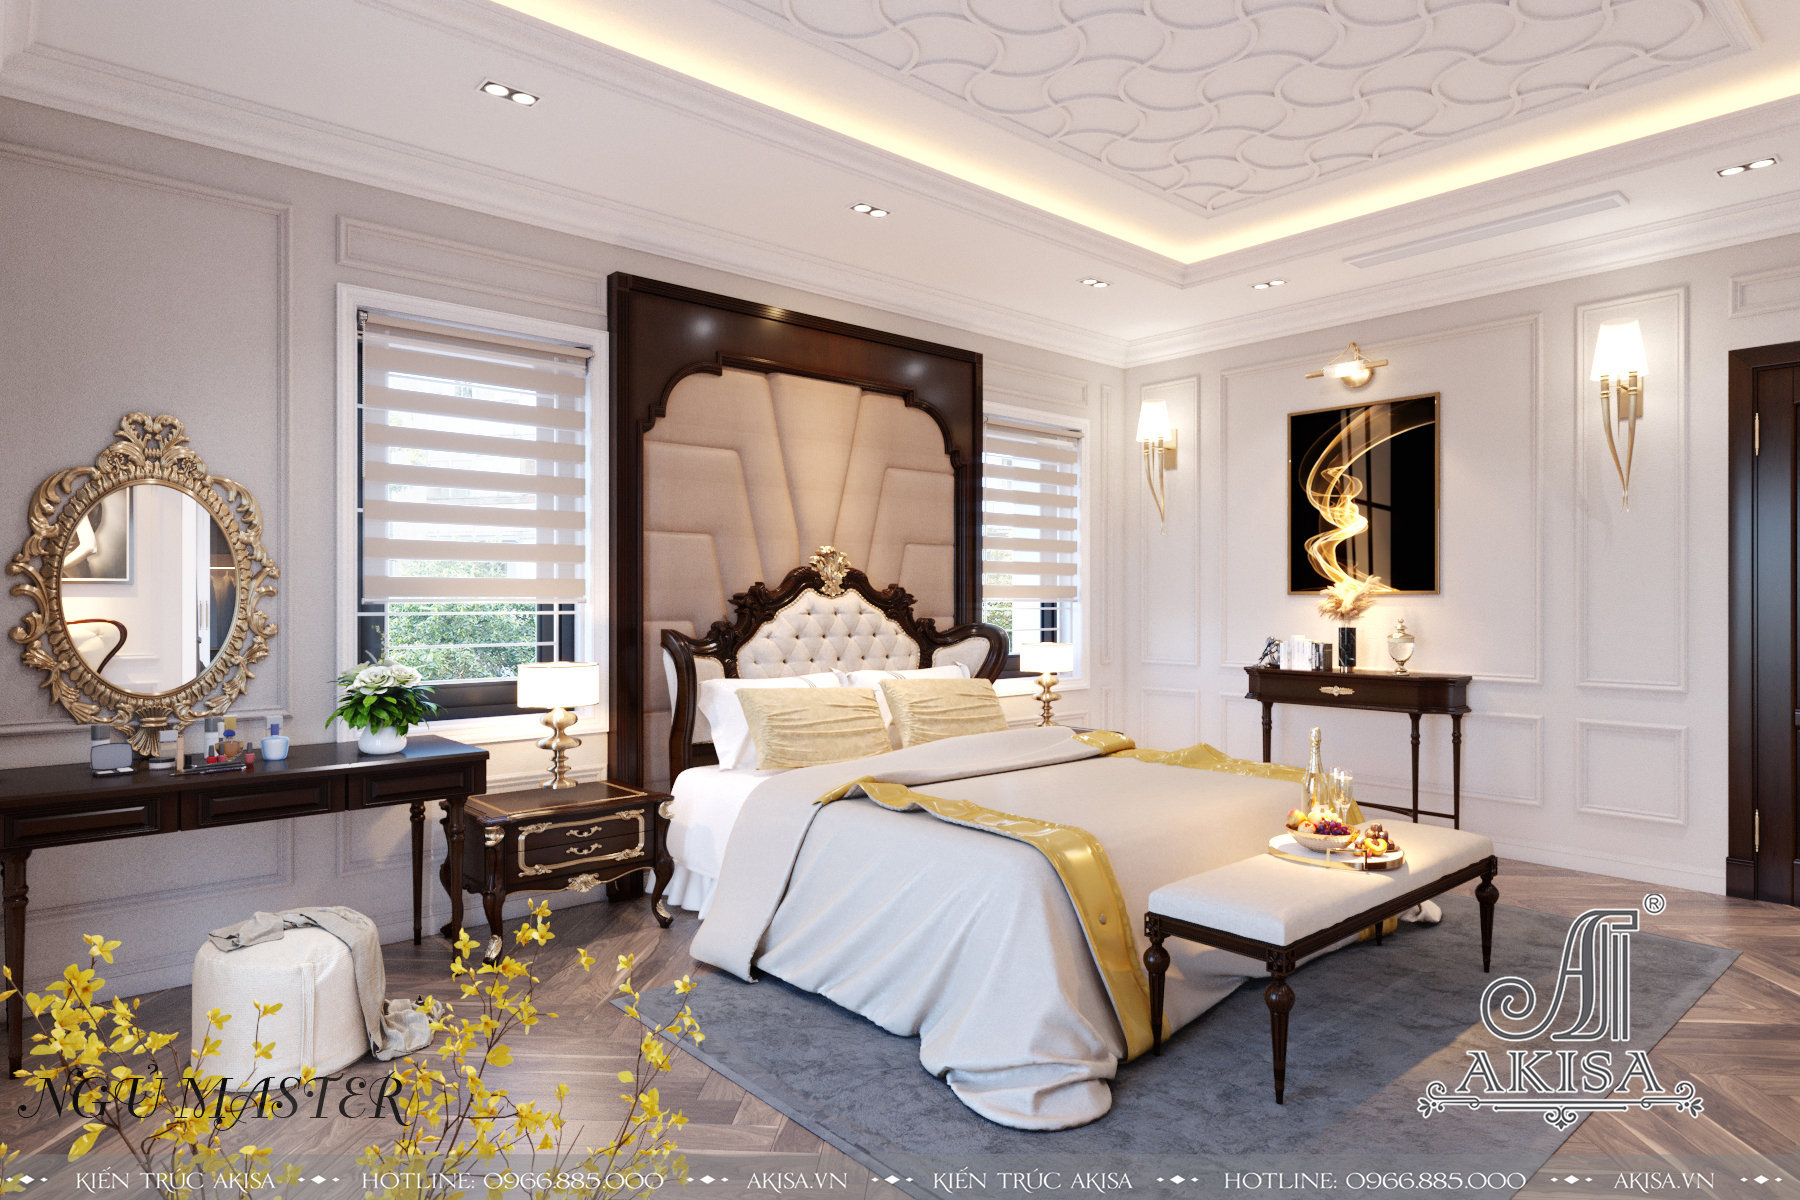 Trang trí nội thất phong cách tân cổ điển đẹp đẳng cấp (CĐT: bà Ngân - Hải Phòng) NT32370